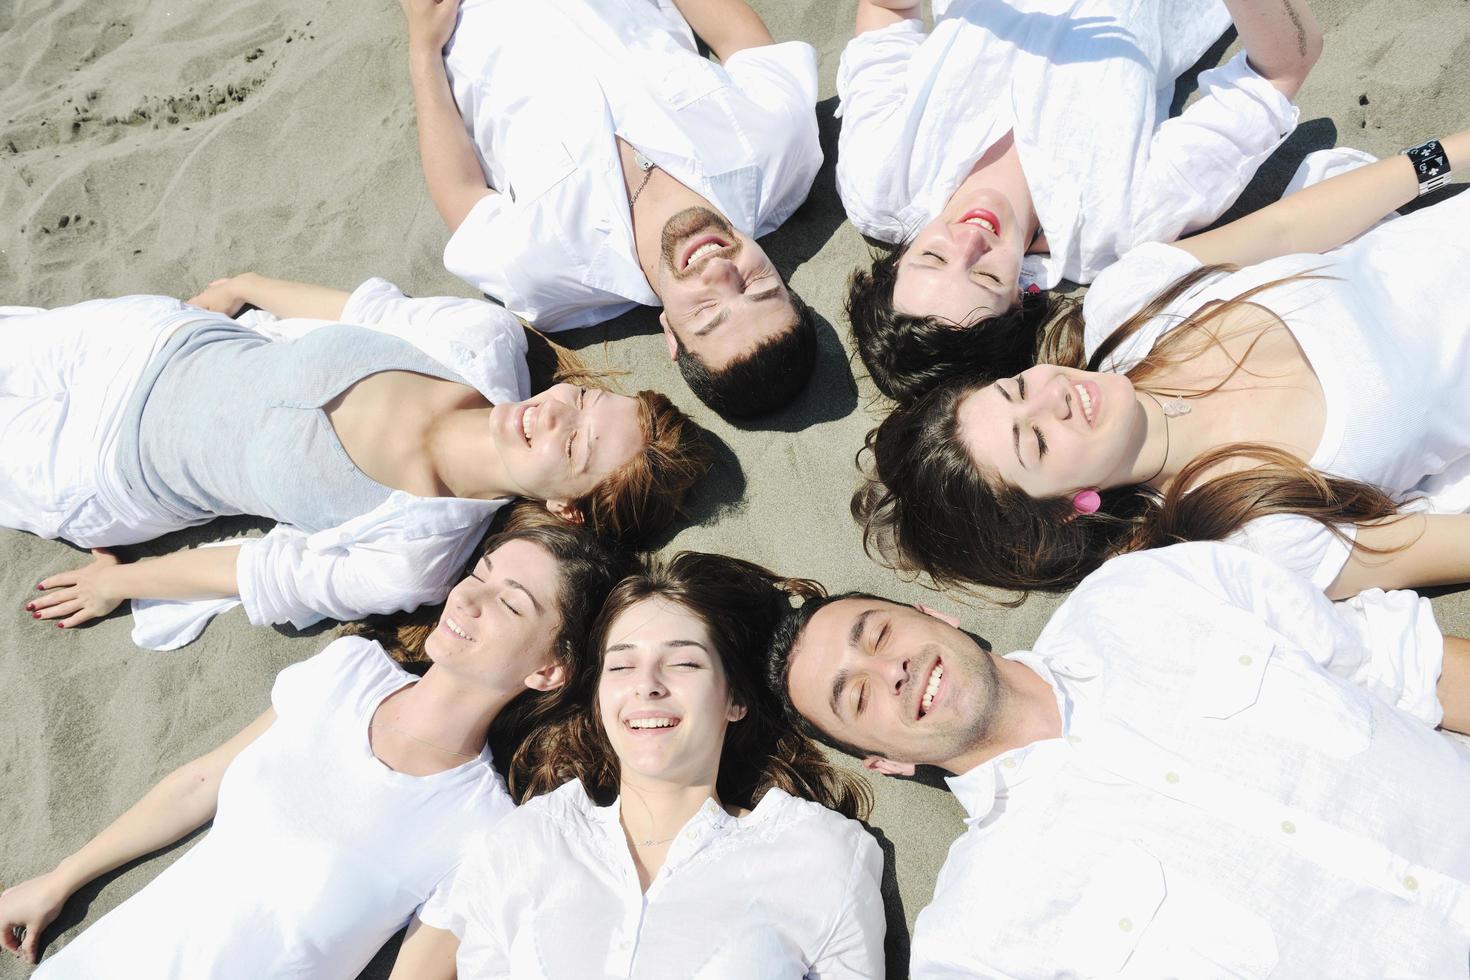 groep van gelukkig jong mensen in hebben pret Bij strand foto